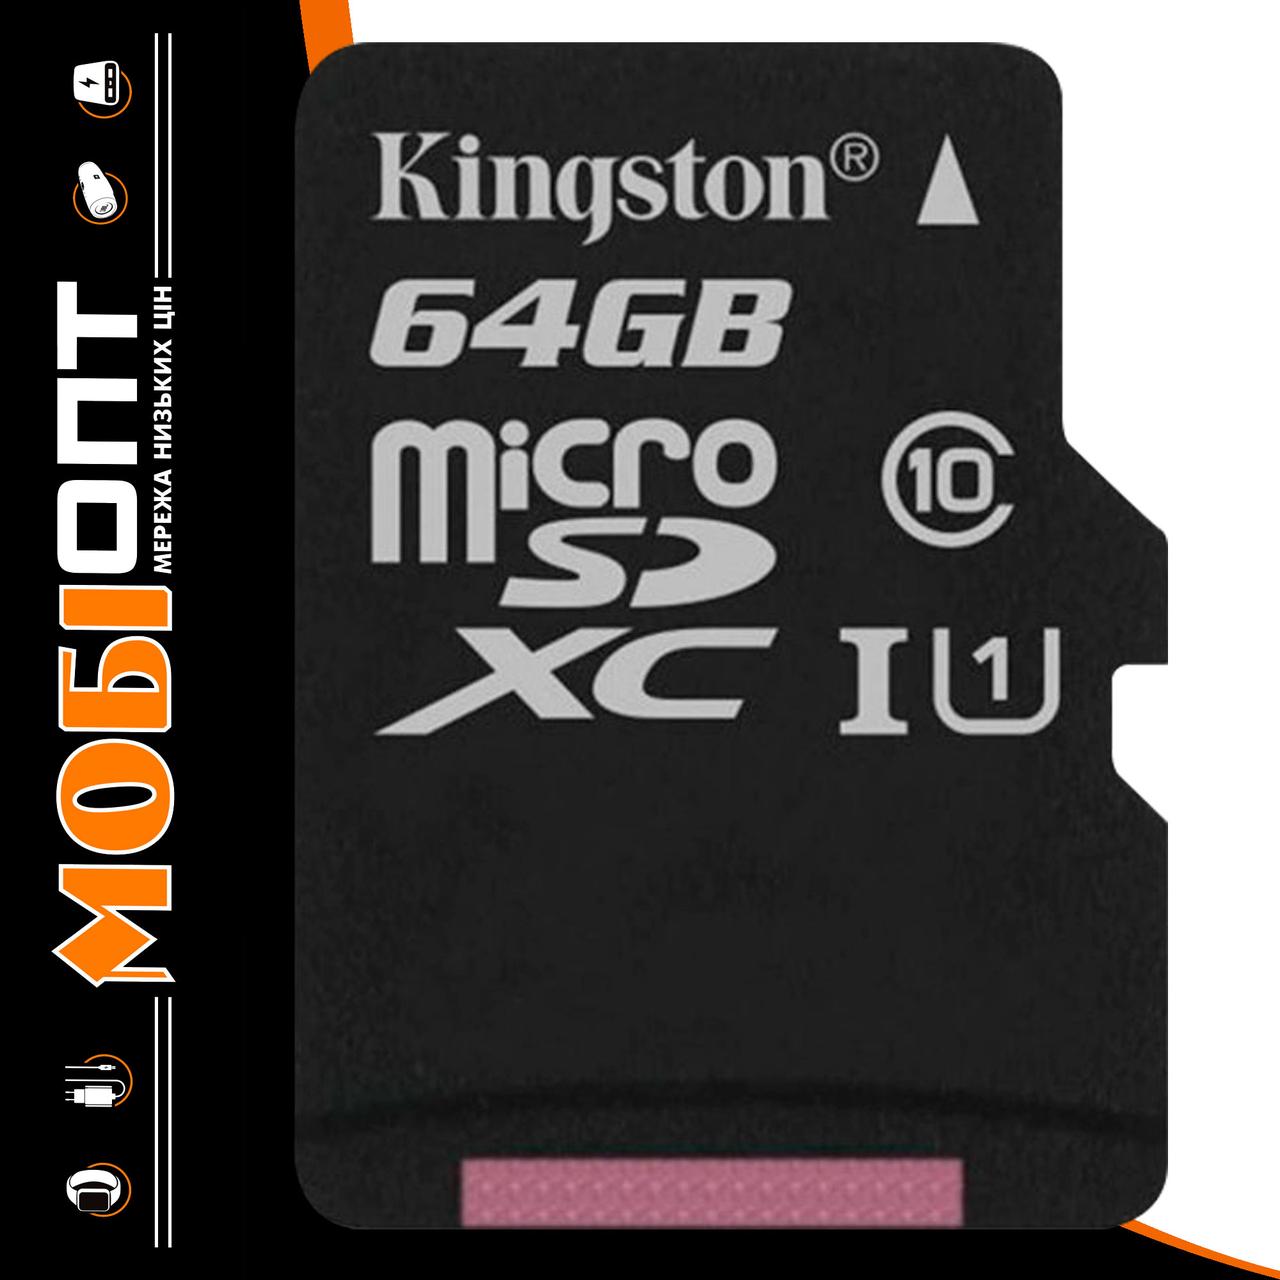 Micro SD 64GB/10 Class Kingston